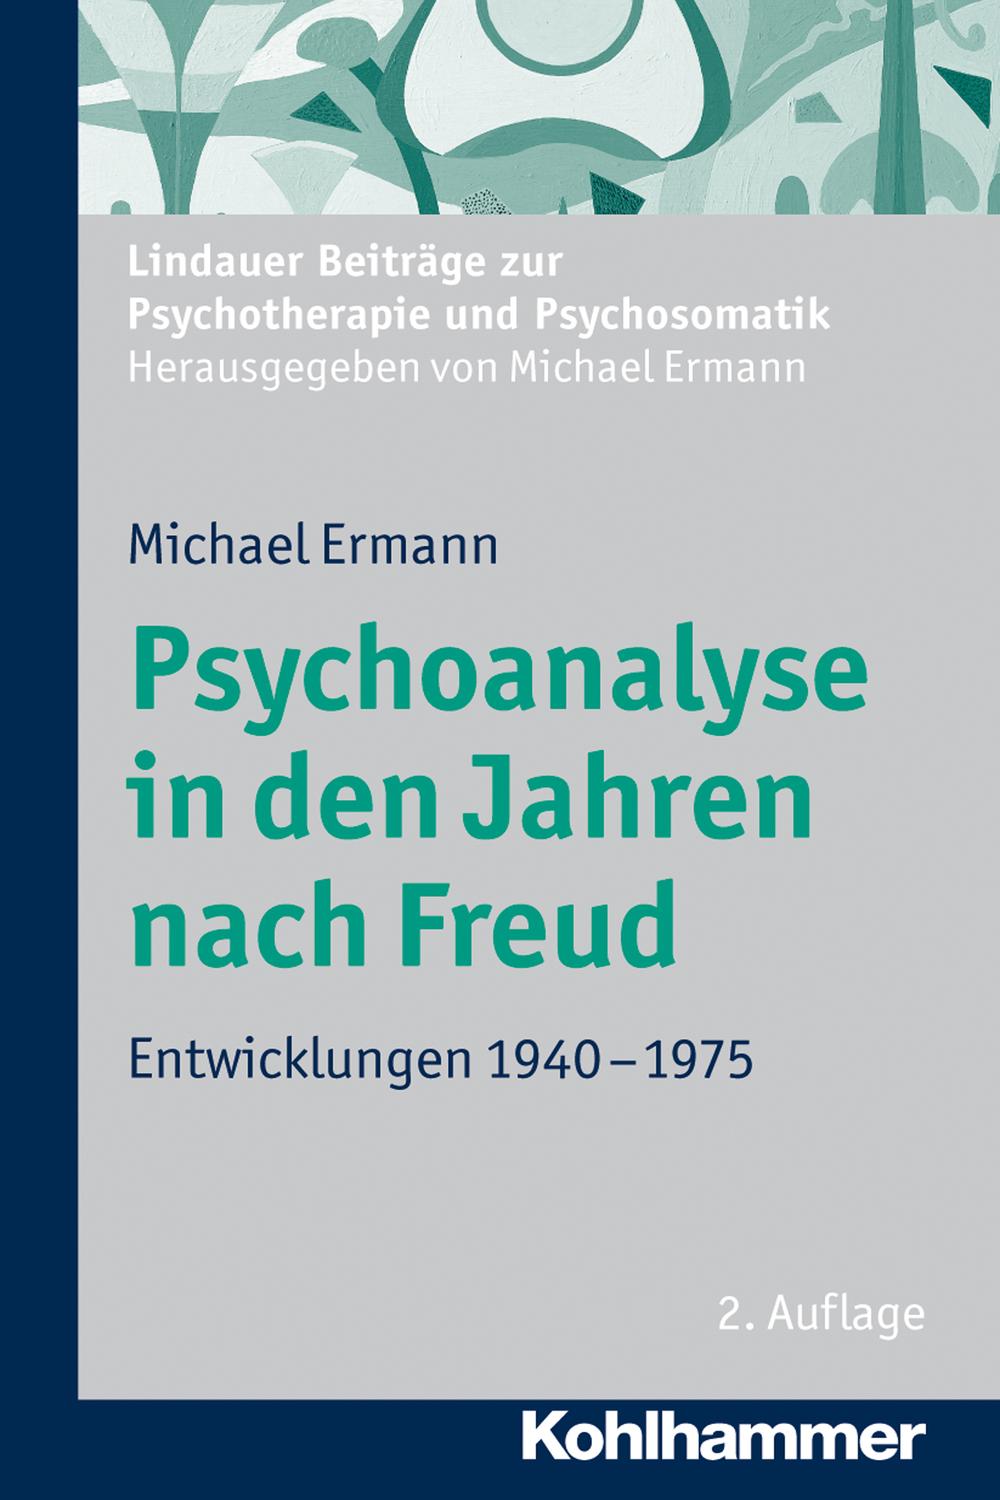 Psychoanalyse in den Jahren nach Freud - Michael Ermann, Michael Ermann